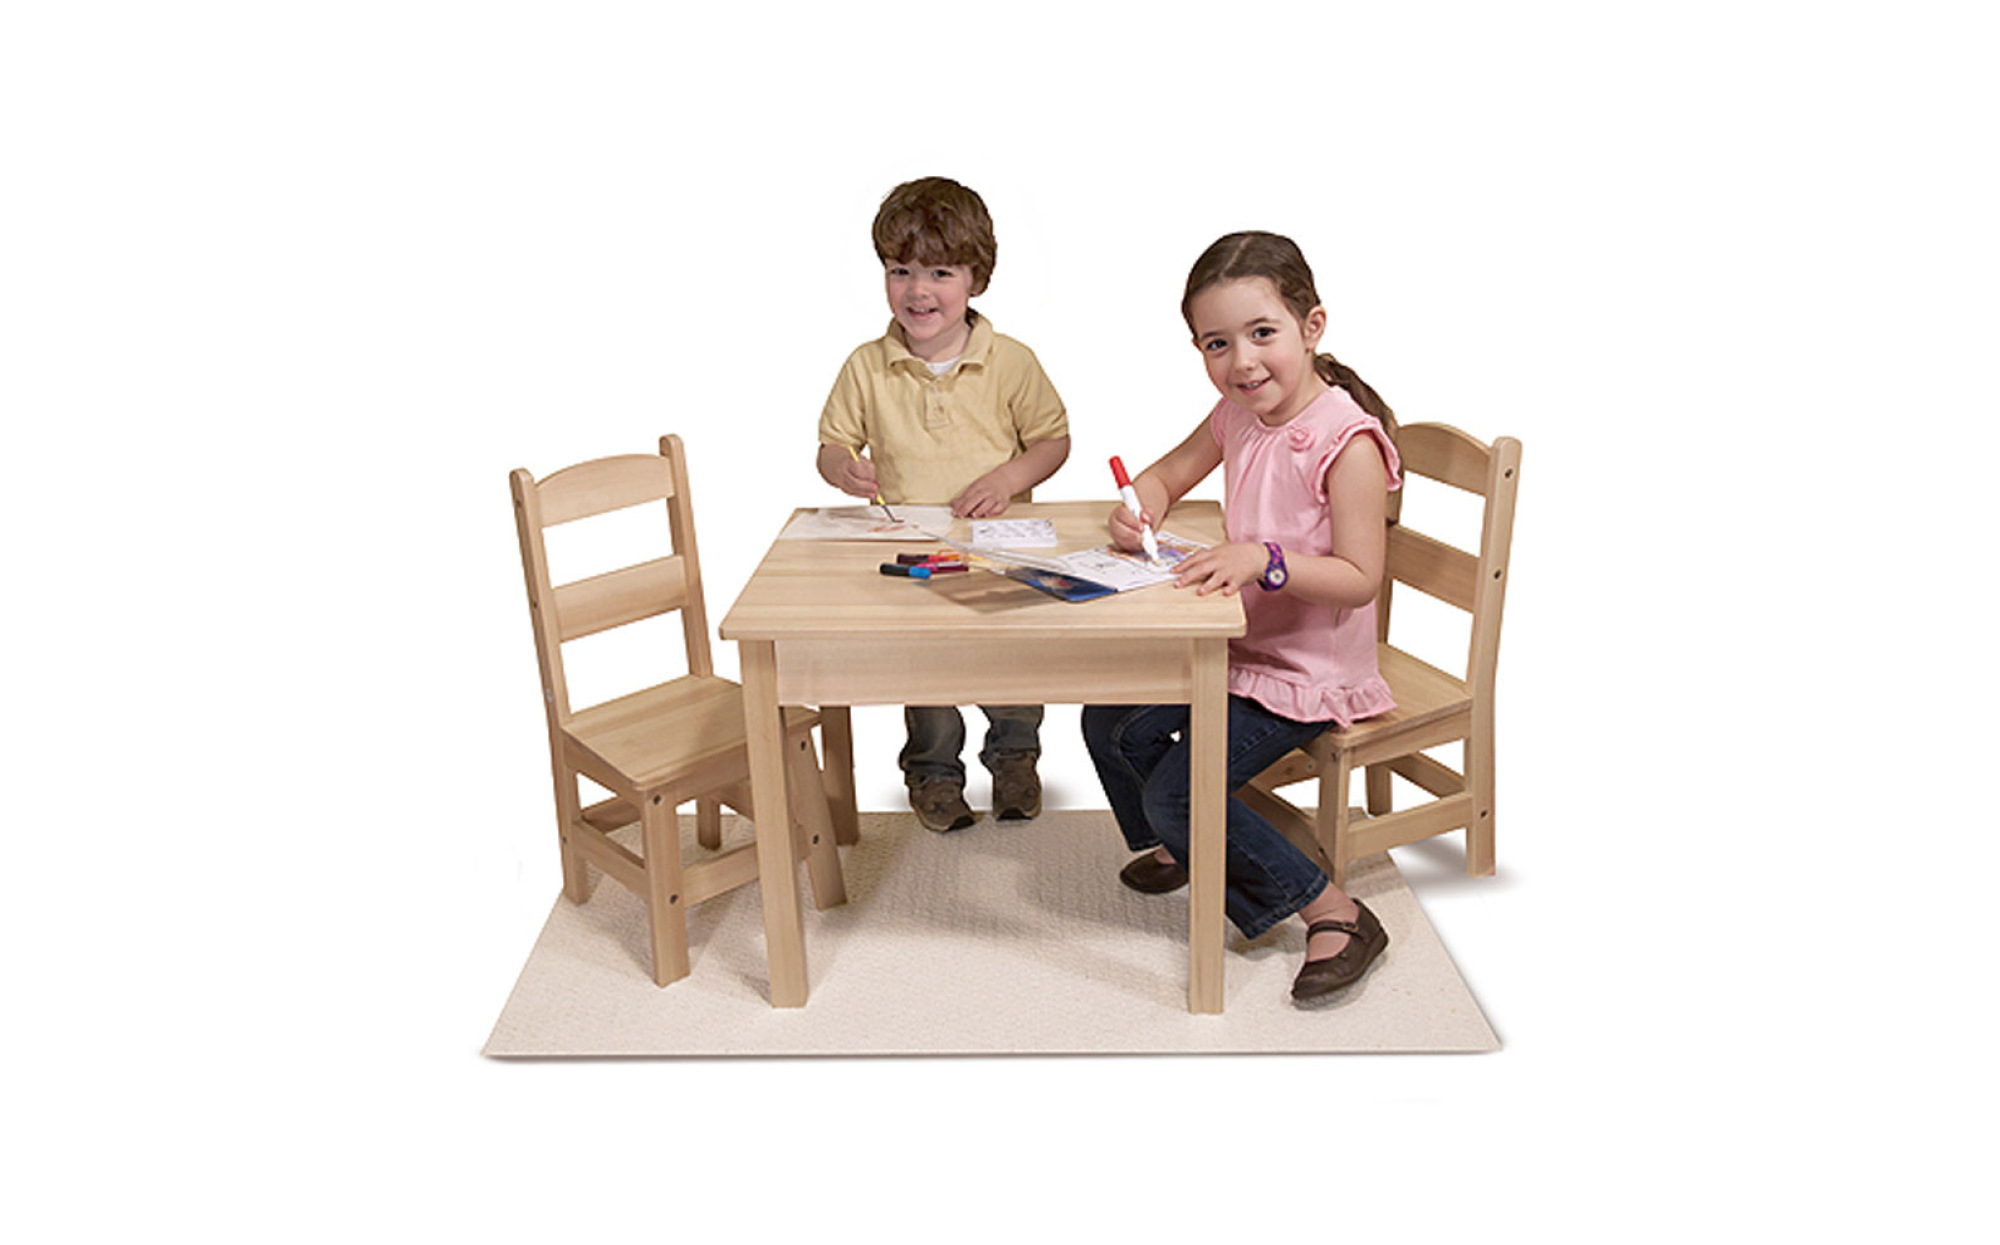 Играть со столом. Столик Melissa Doug. Детский стульчик со столиком для игр. Столик детский со стульчиками. Детский деревянный стол.